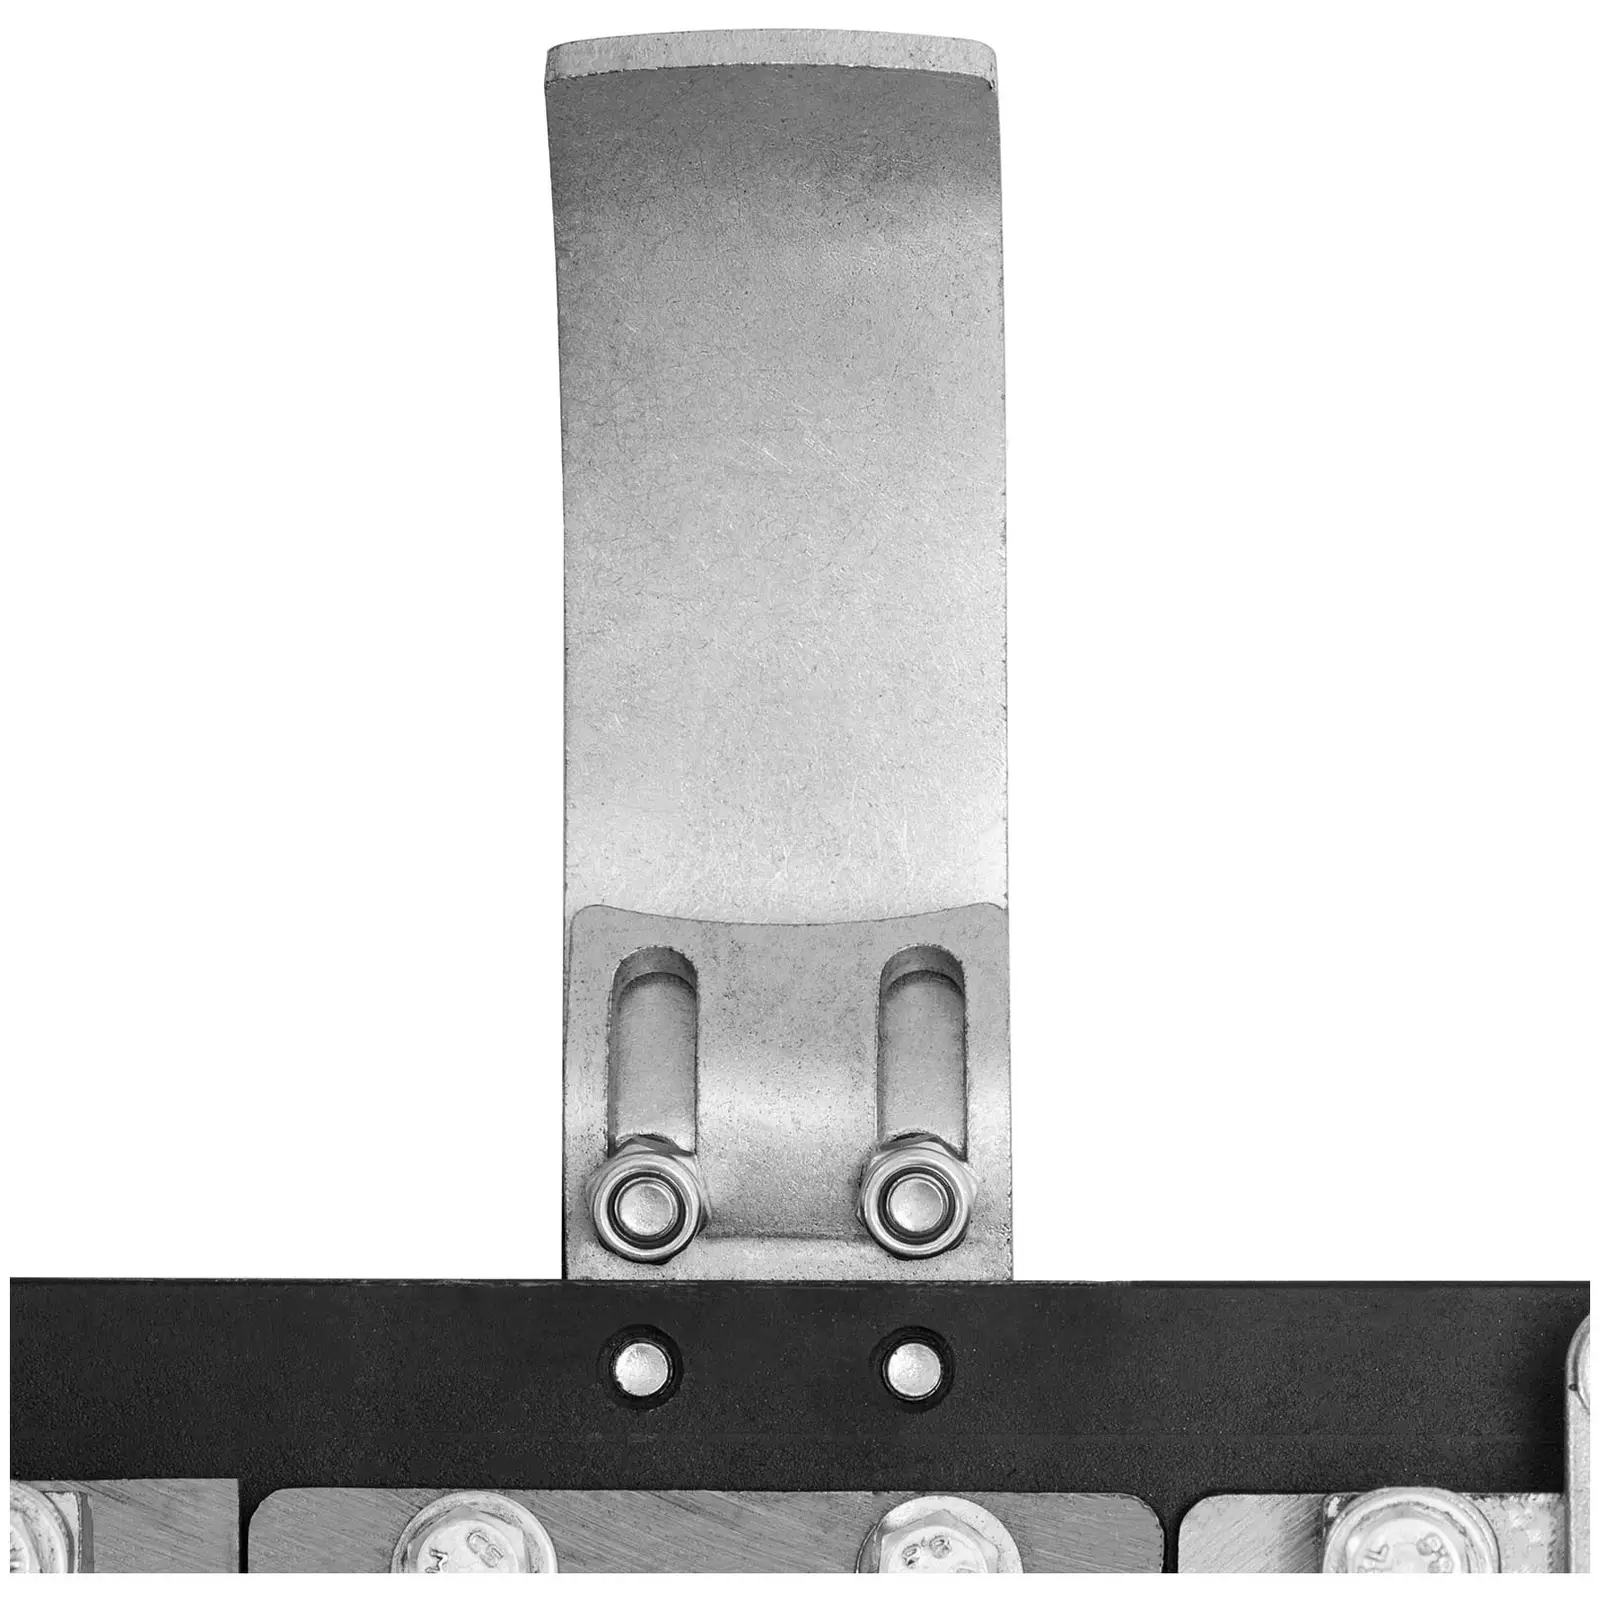 Klippebjelke for enkeltaksel HT-WB-650 - 770 mm skjærebredde